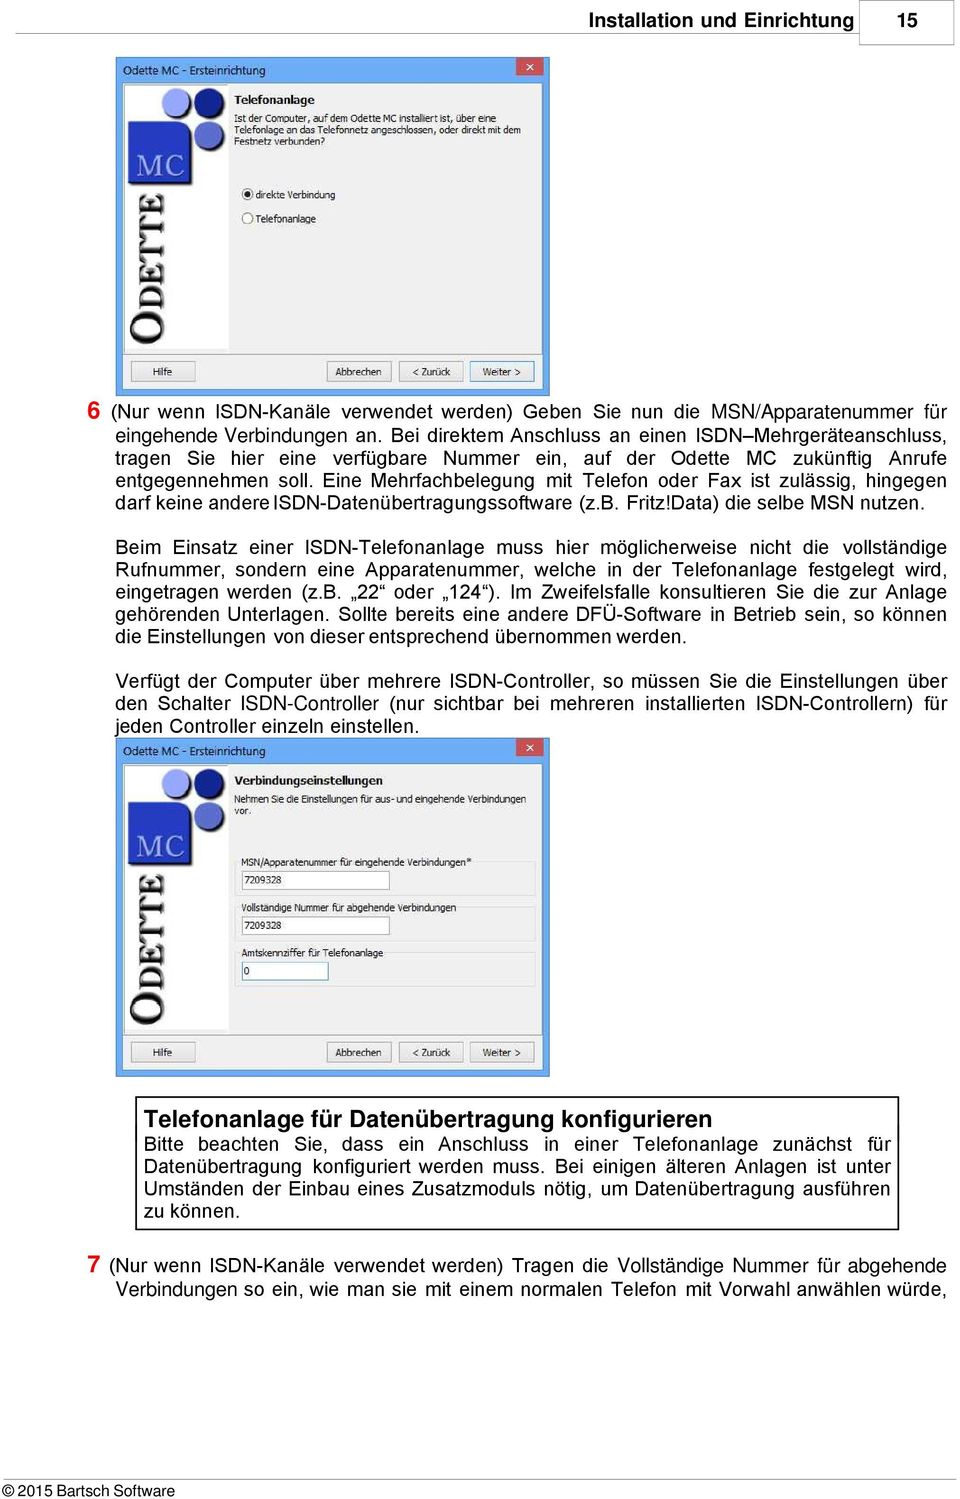 Eine Mehrfachbelegung mit Telefon oder Fax ist zulässig, hingegen darf keine andere ISDN-Datenübertragungssoftware (z.b. Fritz!Data) die selbe MSN nutzen.